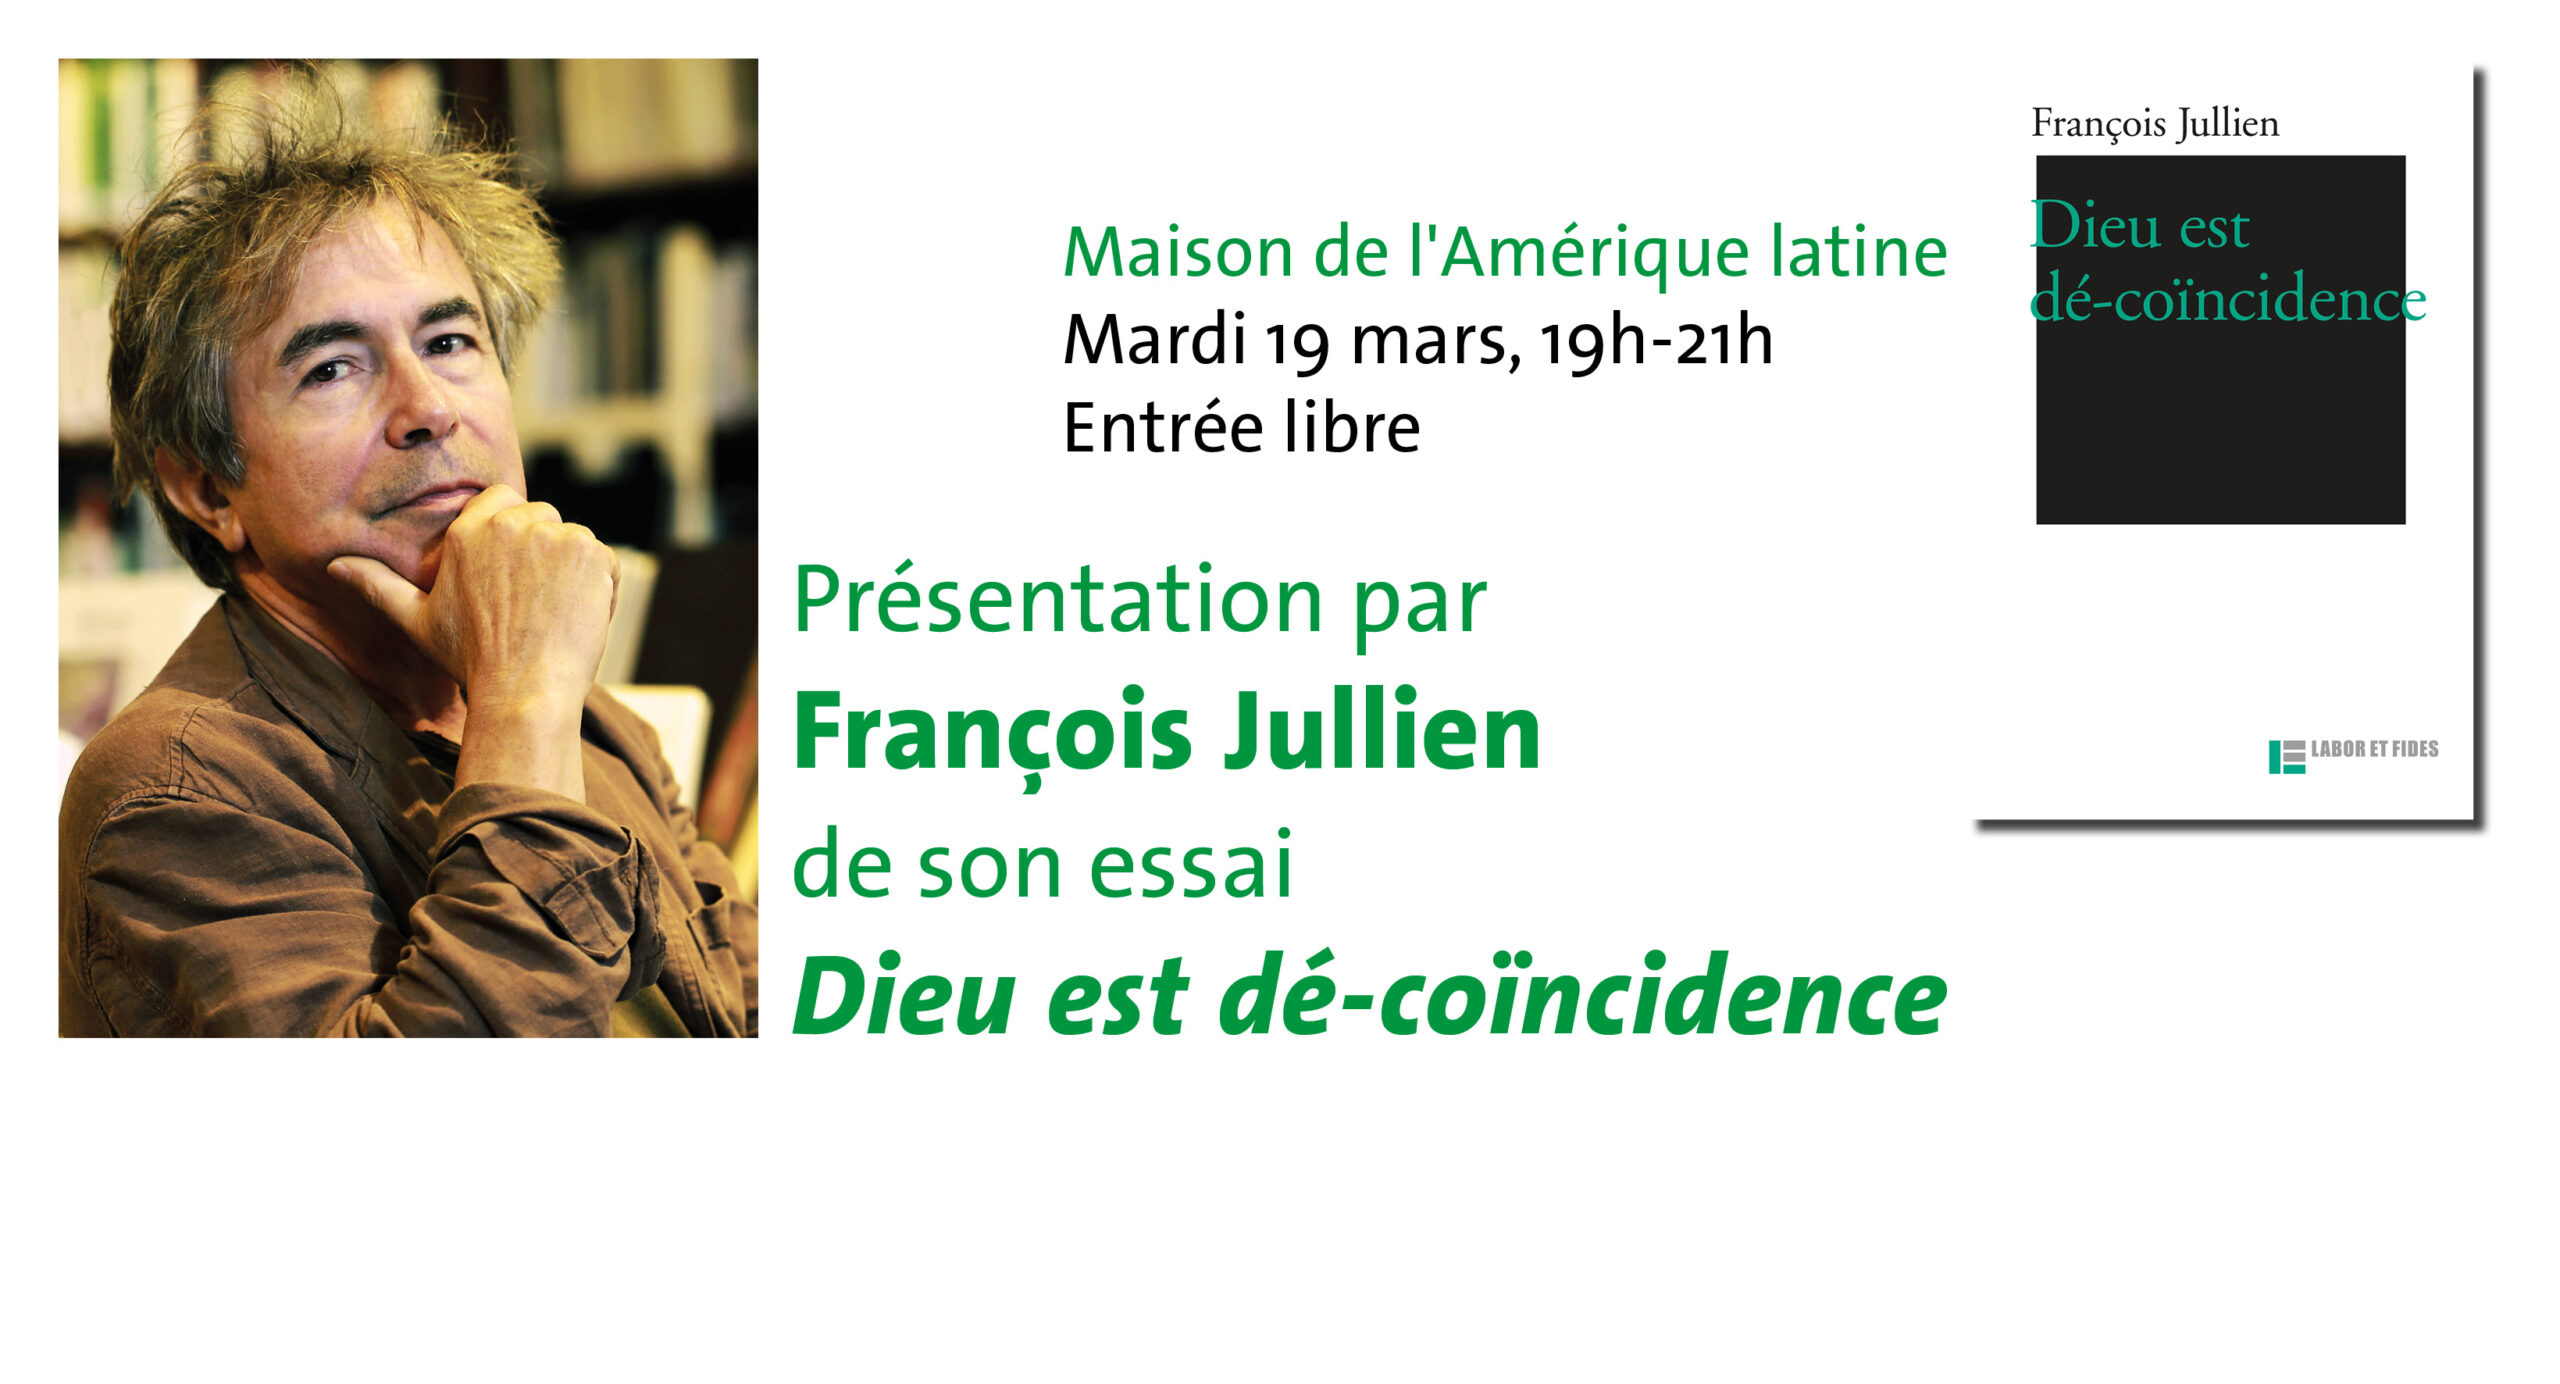 François Jullien à Paris Maison de l'Amérique latine